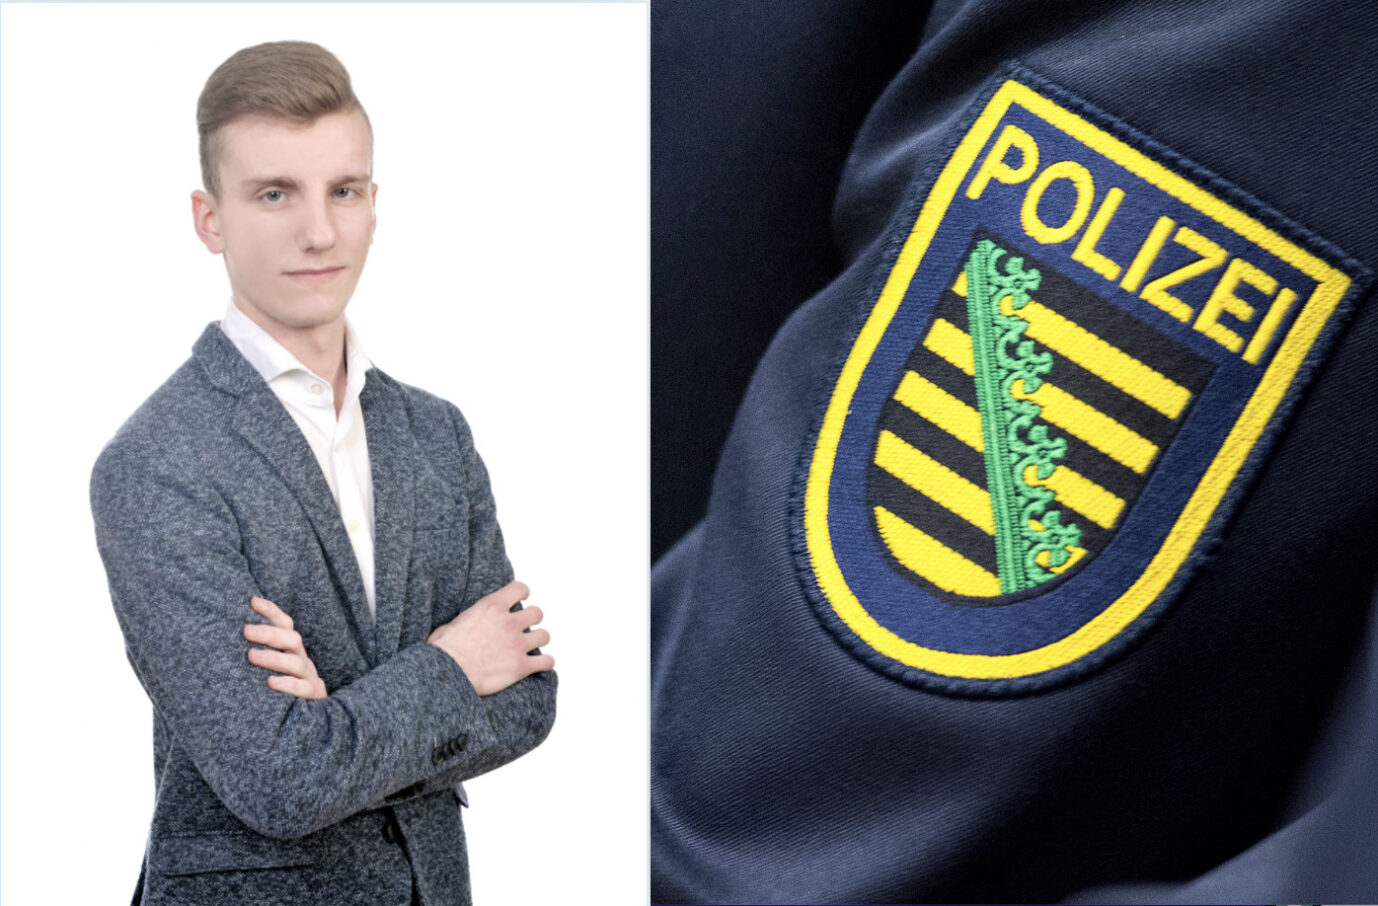 AfD-Stadtrat steht mit verschränkten Armen. Daneben ist das Wappen der sächsischen Polizei zu sehen.